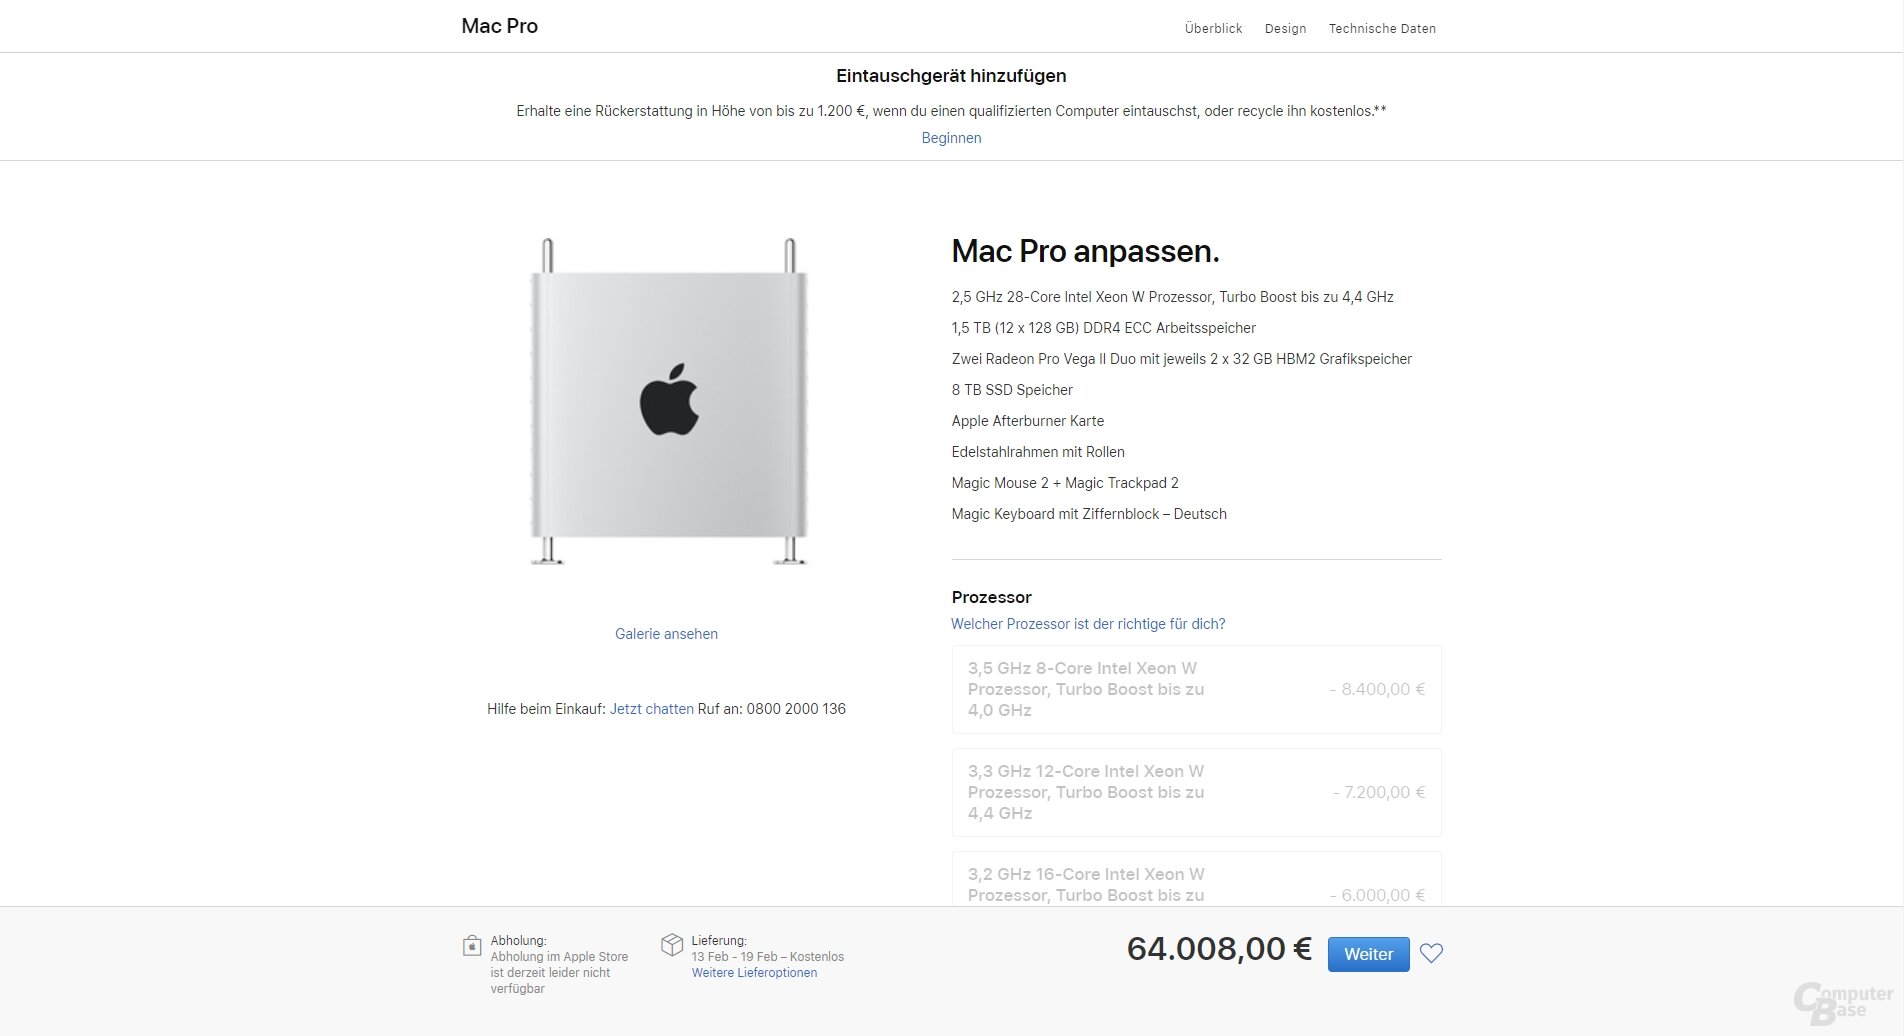 Der Apple Mac Pro in der Maximalkonfiguration